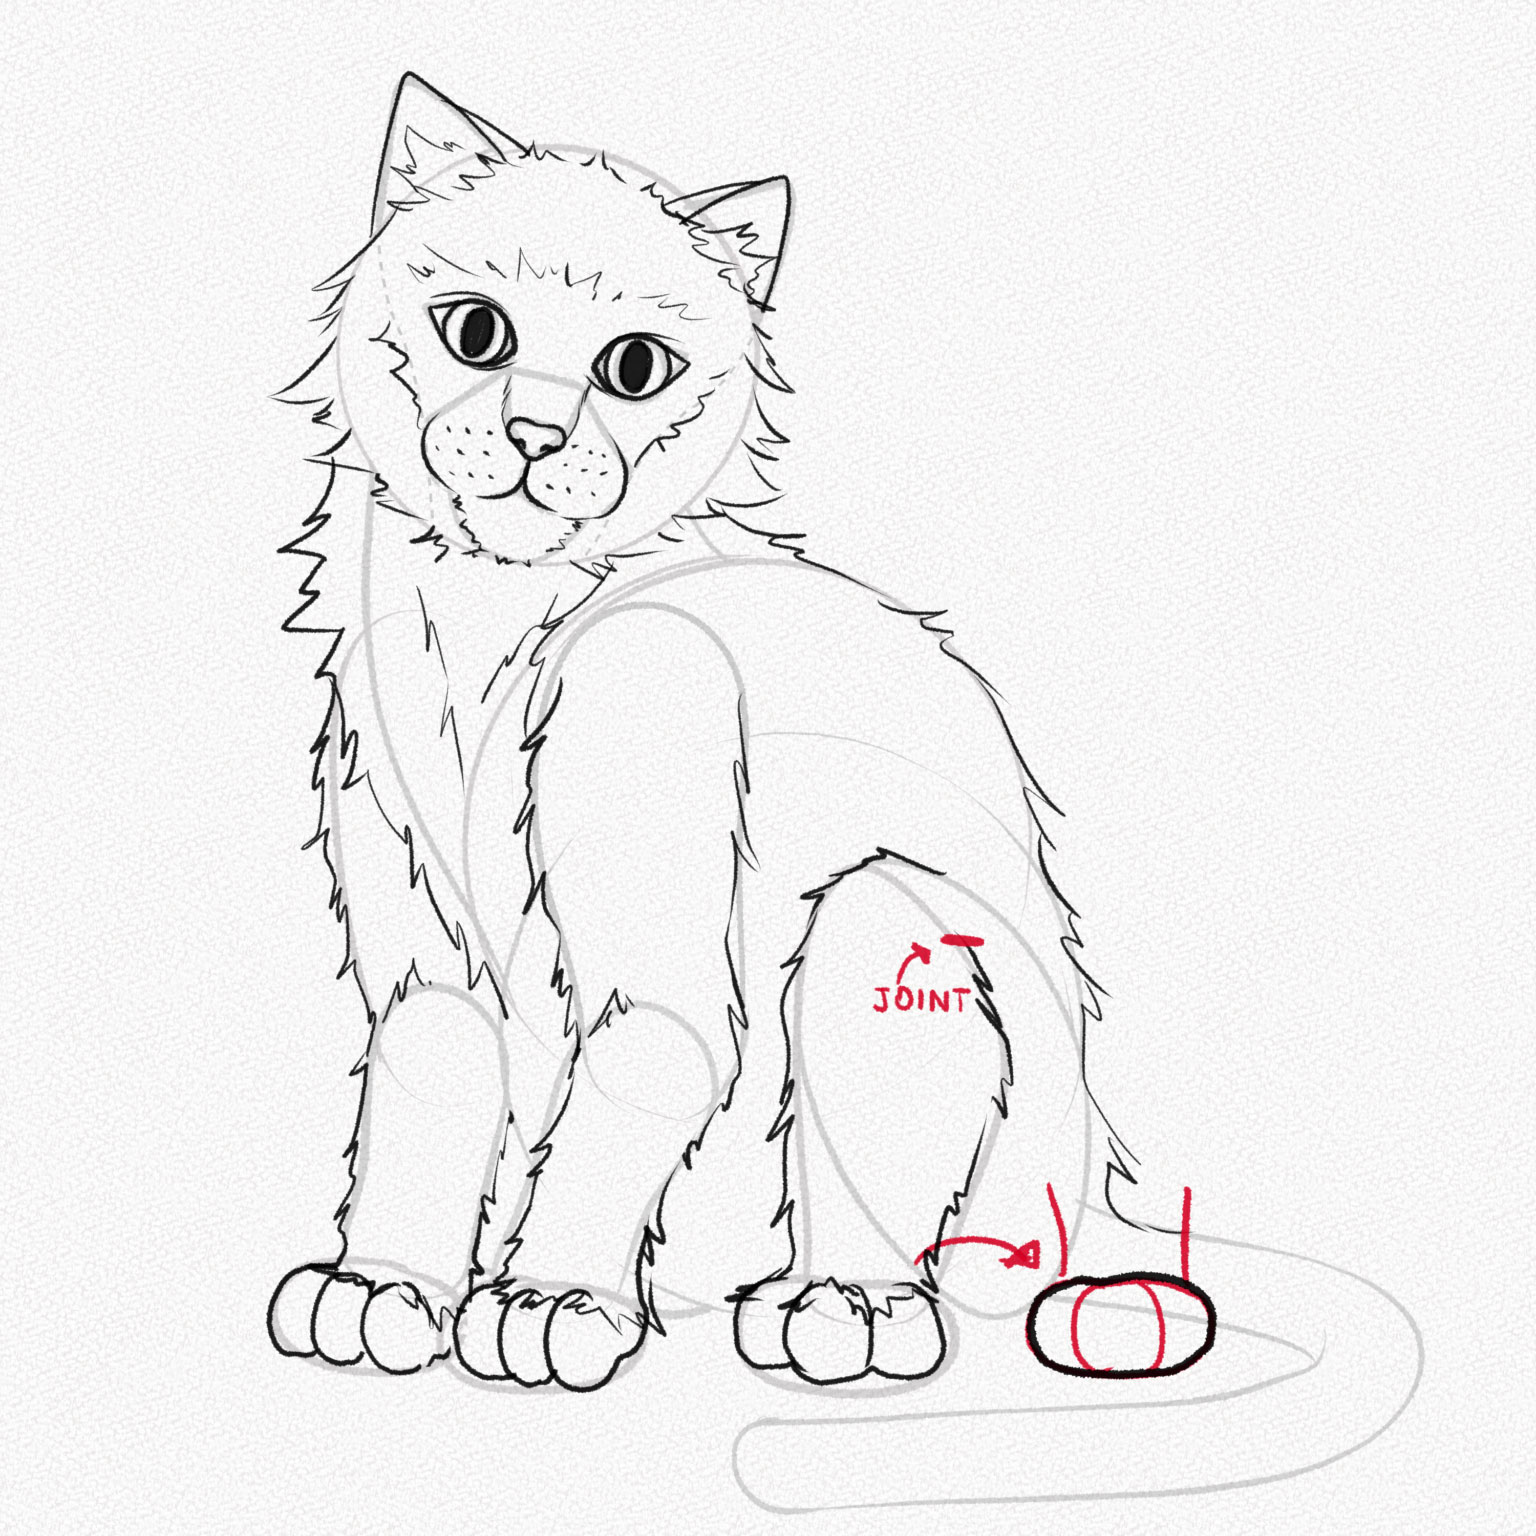 hướng dẫn vẽ chân sau mang lại mèo